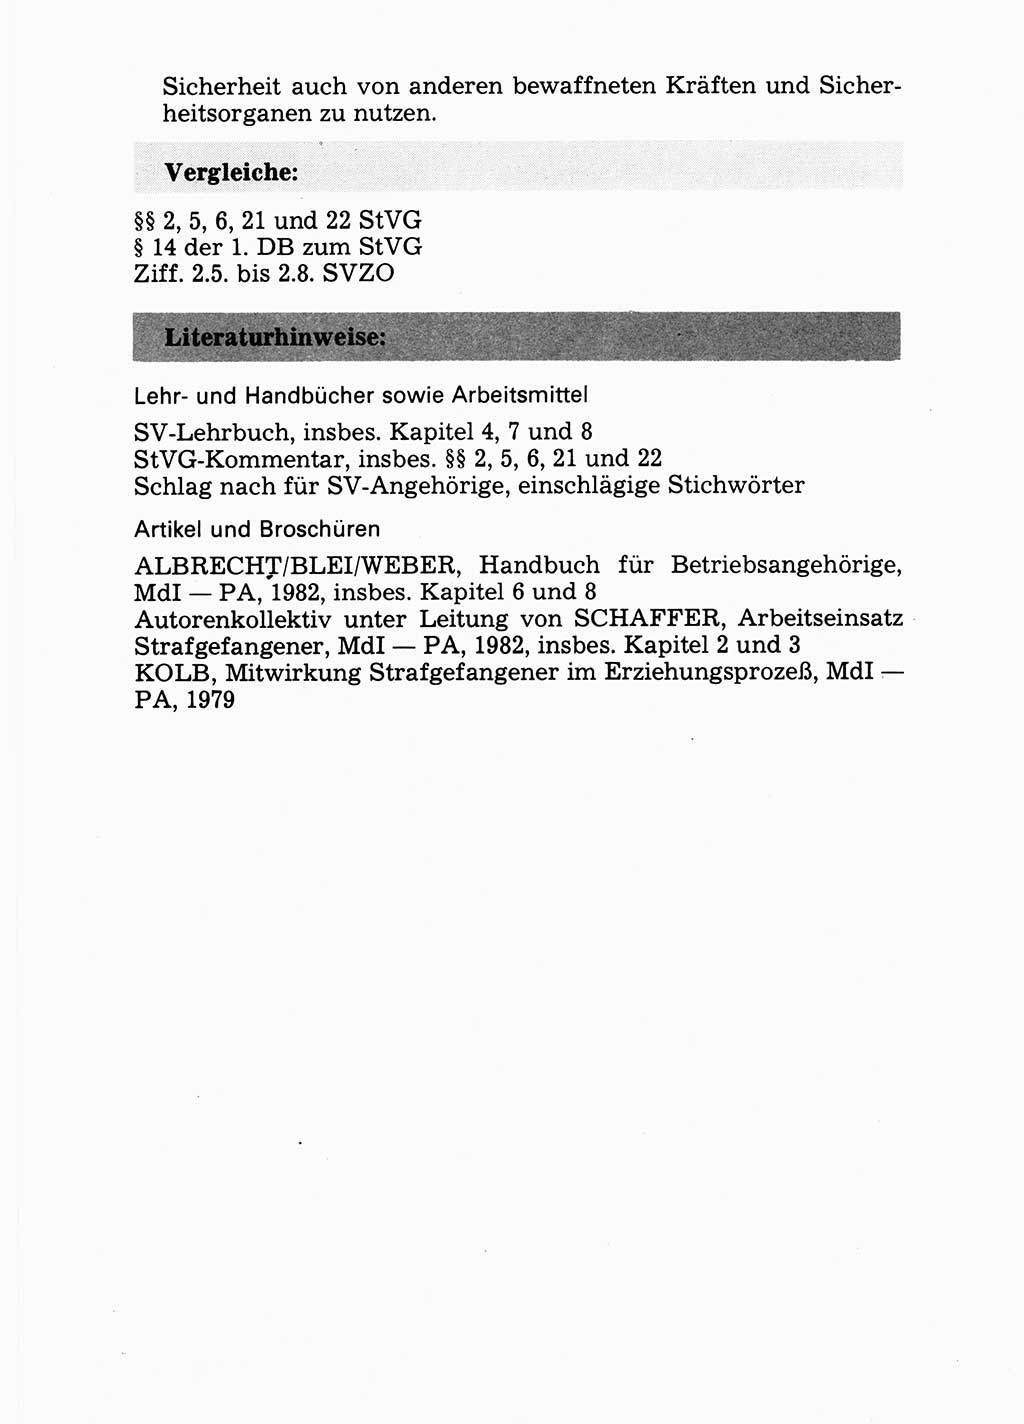 Handbuch für operative Dienste, Abteilung Strafvollzug (SV) [Ministerium des Innern (MdI) Deutsche Demokratische Republik (DDR)] 1981, Seite 87 (Hb. op. D. Abt. SV MdI DDR 1981, S. 87)